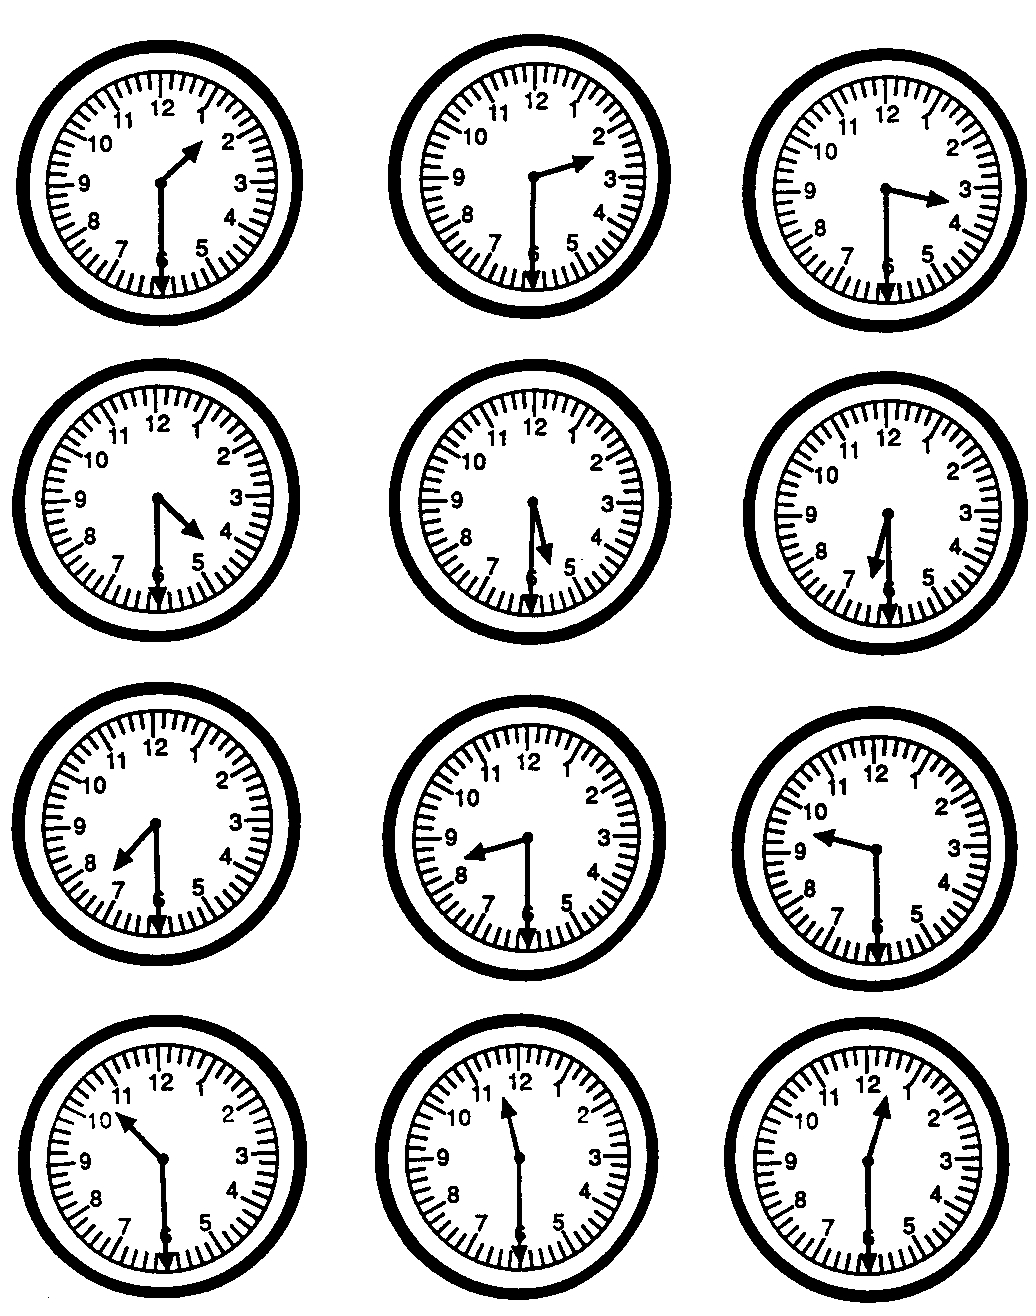 kalendarz, czas - zegary.jpg